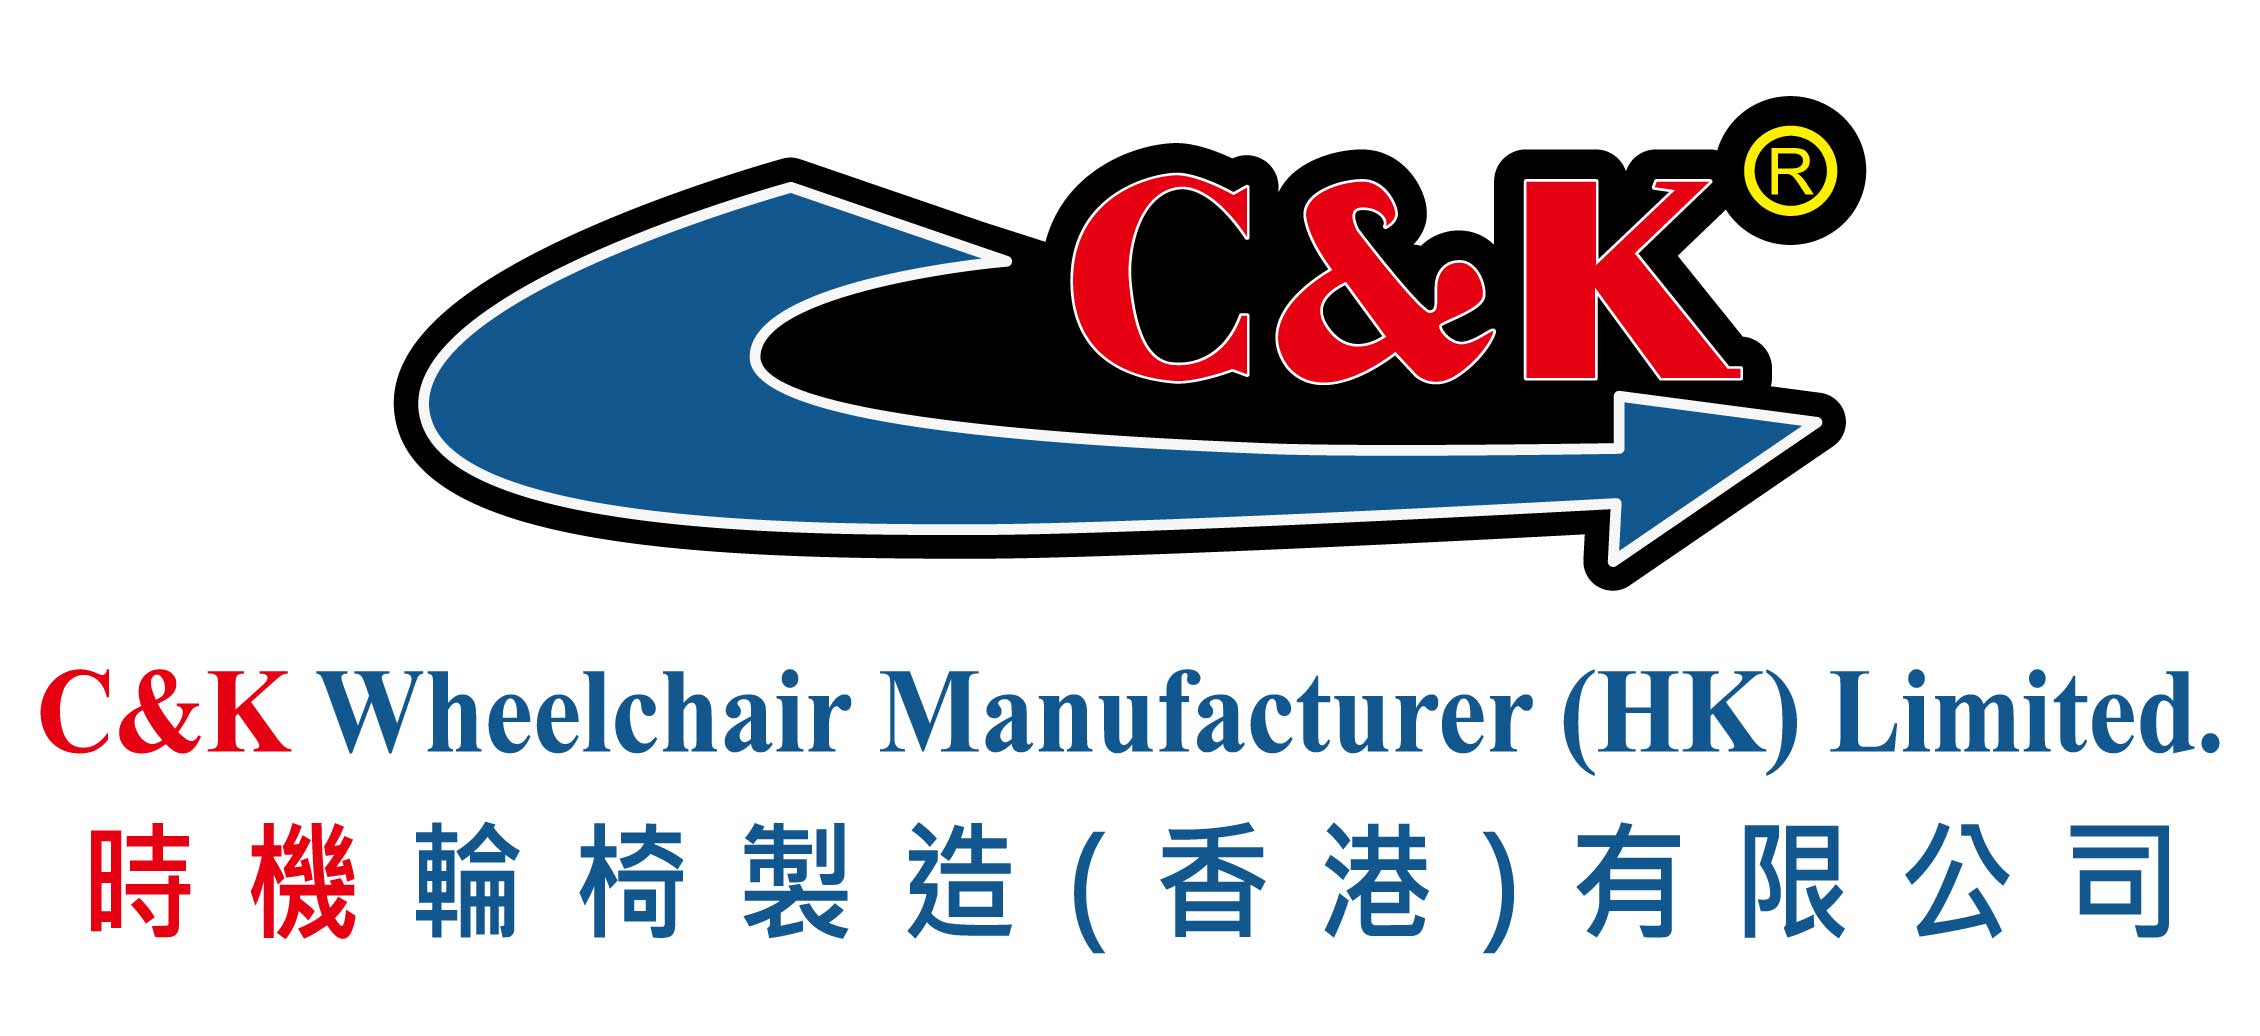 時機輪椅製造(香港)有限公司